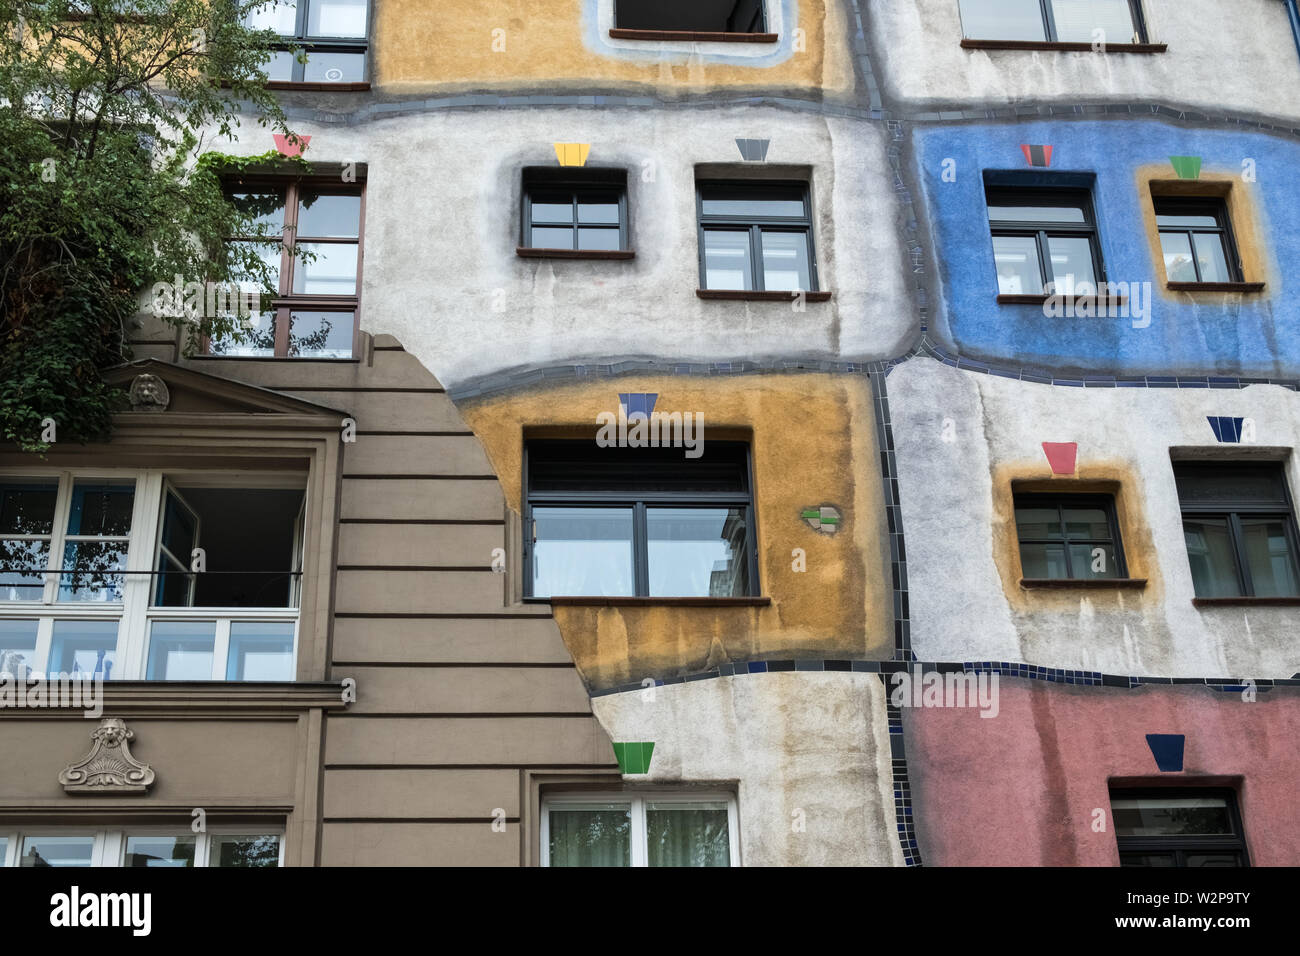 Hundertwasserhaus, designed by artist architect Friedensreich Hundertwasser (a pseudonym), a local landmark and tourist attraction, Vienna, Austria. Stock Photo